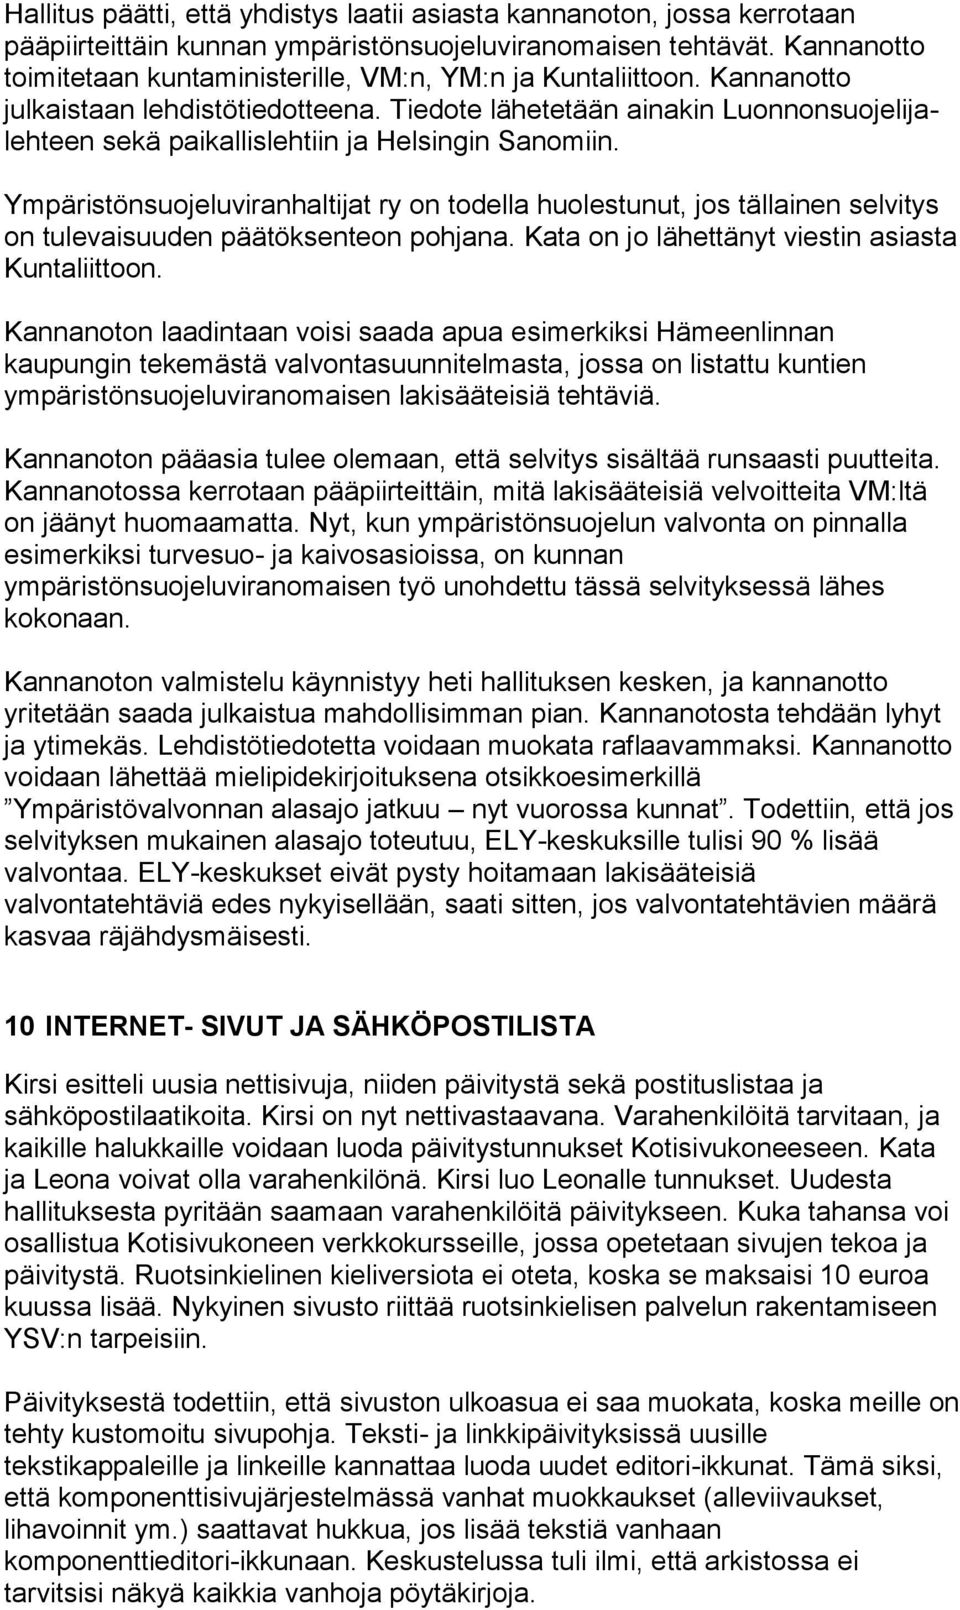 Tiedote lähetetään ainakin Luonnonsuojelijalehteen sekä paikallislehtiin ja Helsingin Sanomiin.